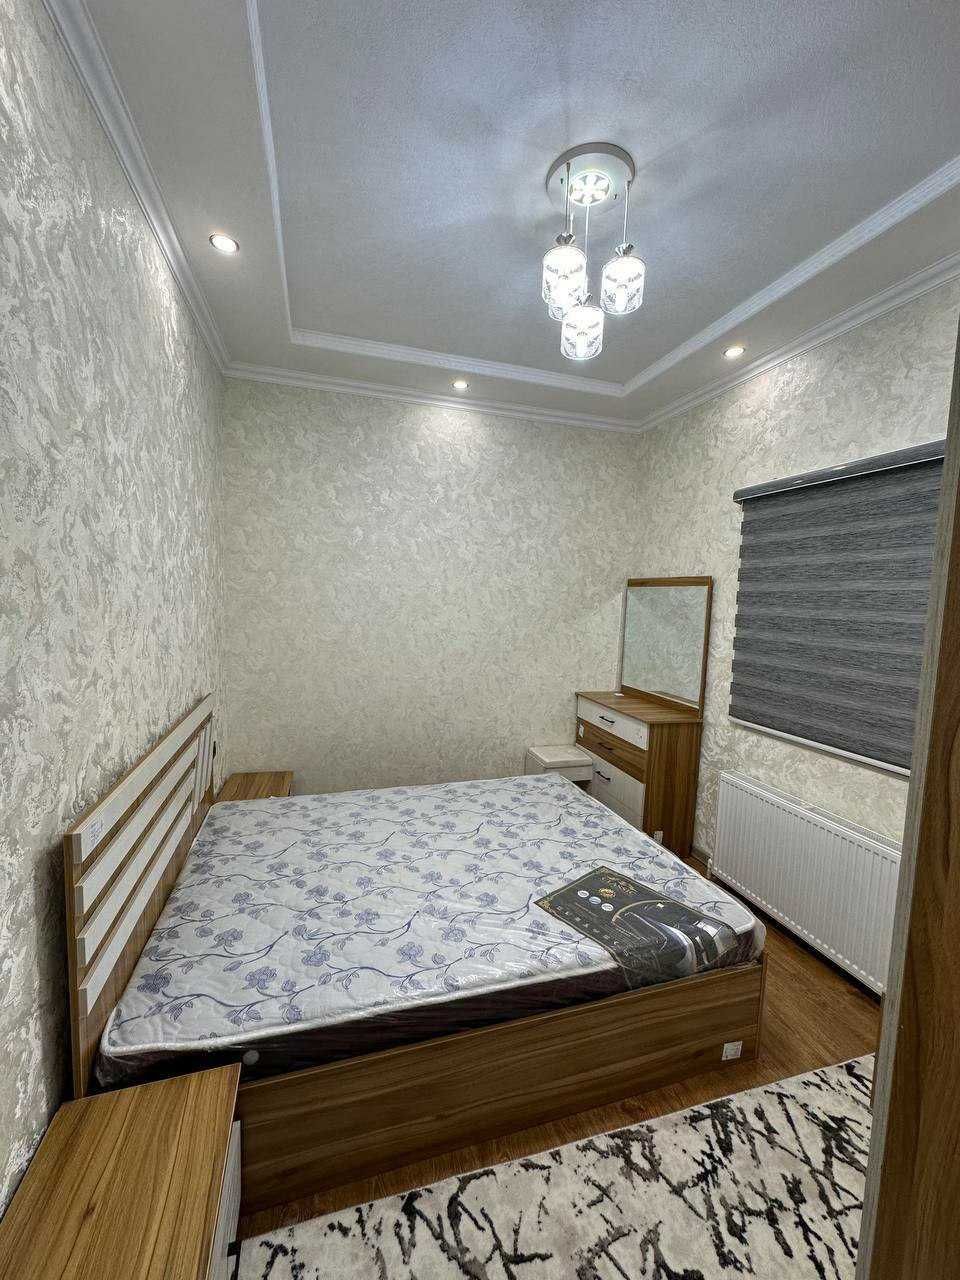 №2734.Продается 2х-комнатная квартира в Новостройке.